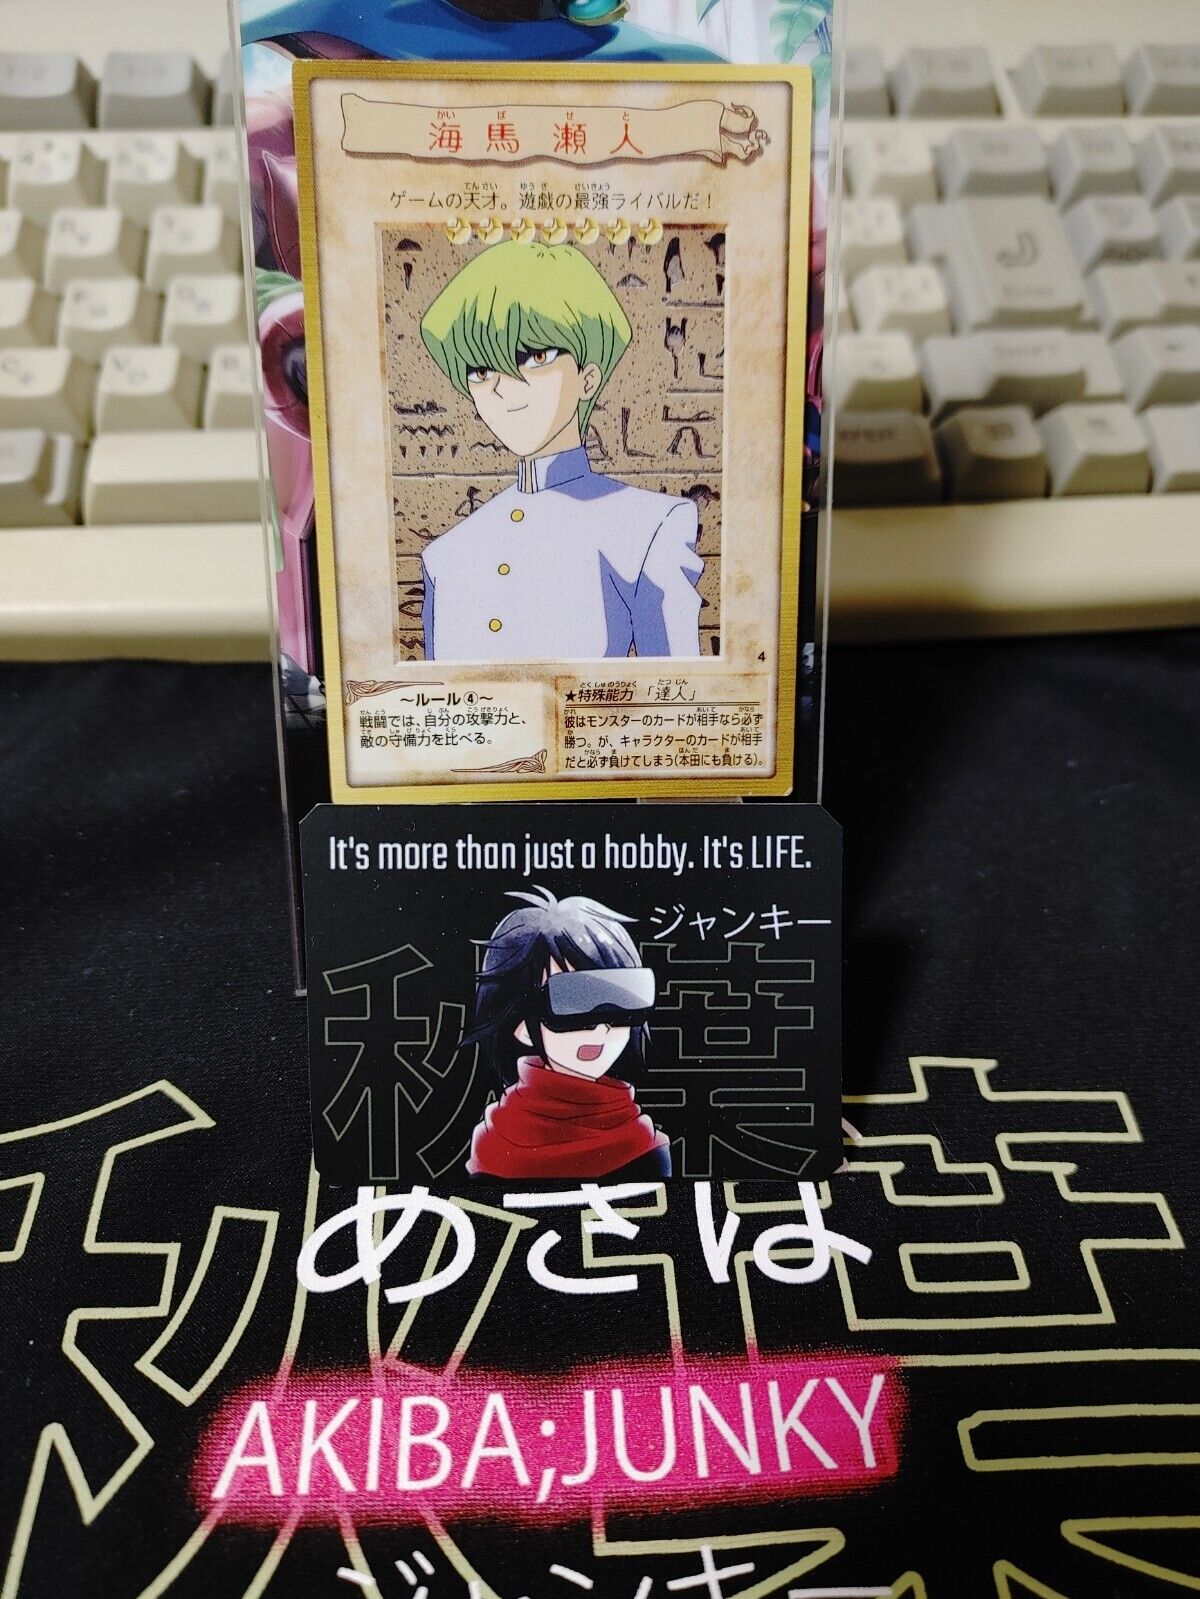 Yu-Gi-Oh Bandai Kaiba Seto Carddass Card #4 Japanese Retro Japan Rare Item